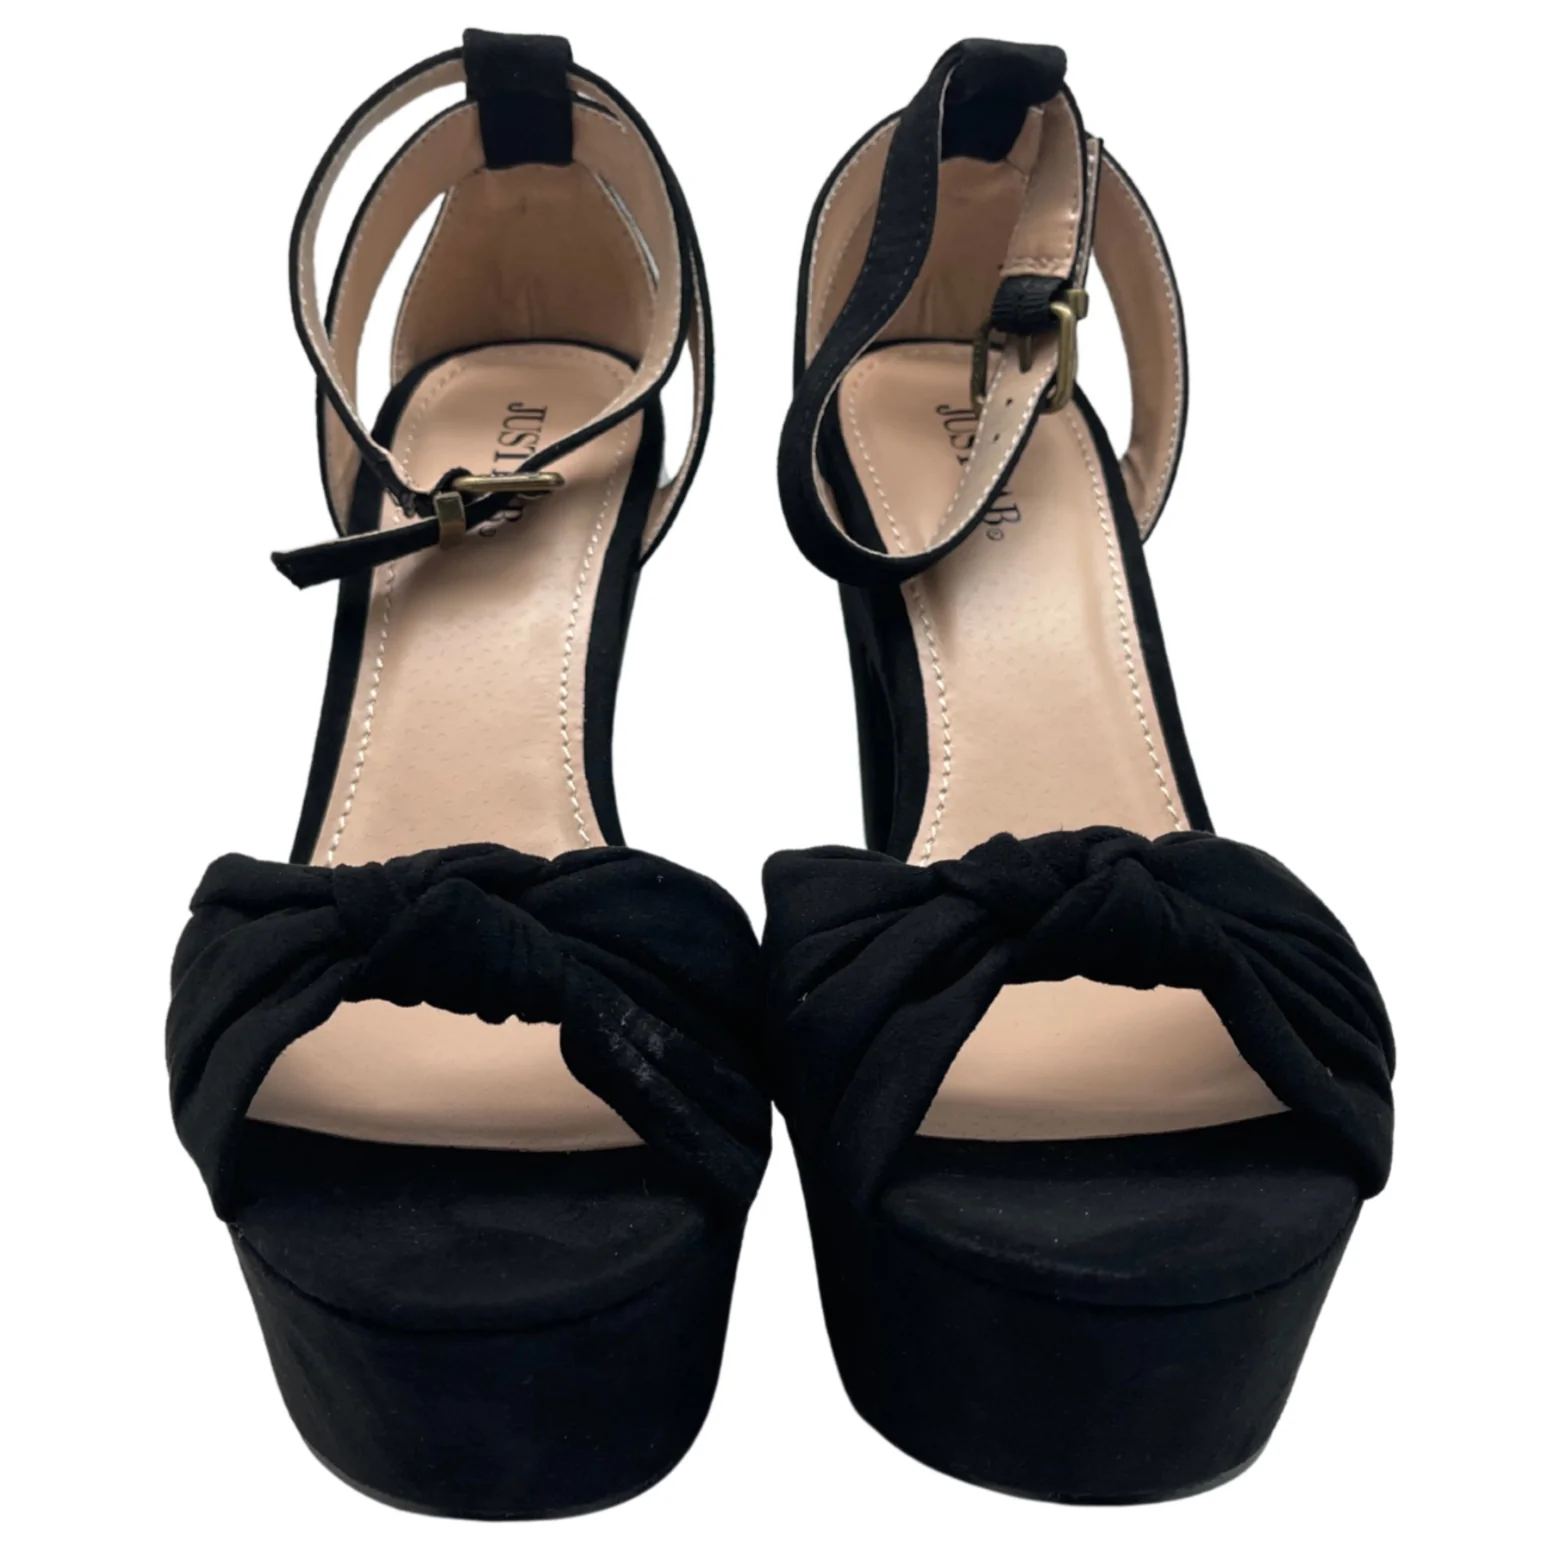 JustFab Women's Heels / Lawren / Black Pumps / 5.5" Heel / Size 8.5